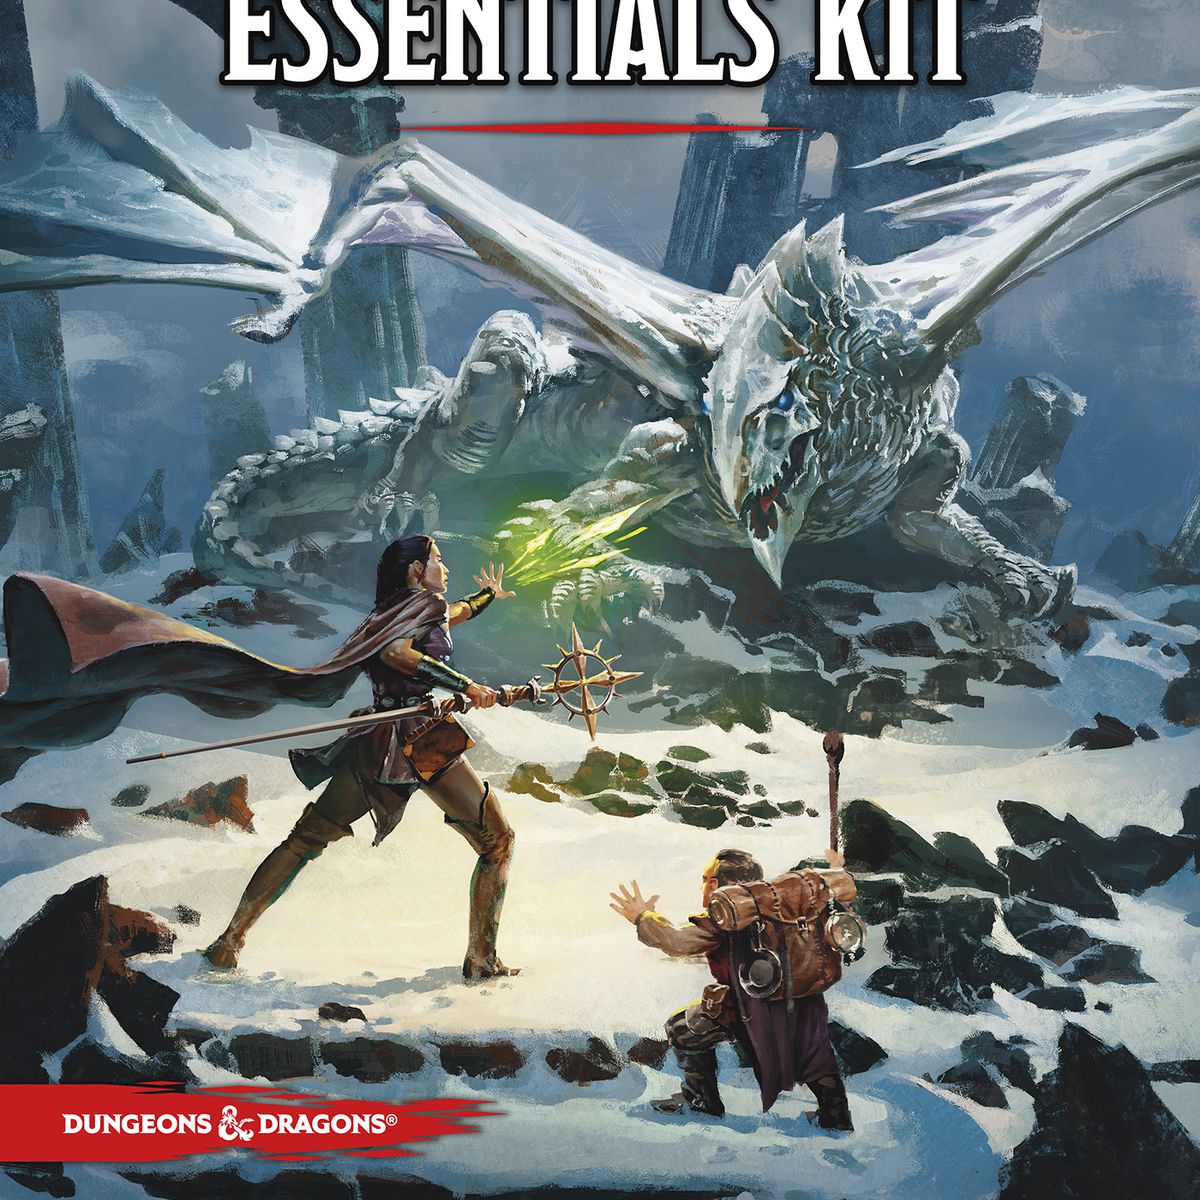 Omslagsbild för Dungeons & Dragons Essentials Kit visar en spelare-karaktär och deras sidekick som går upp mot en drake på en snöig kulle.